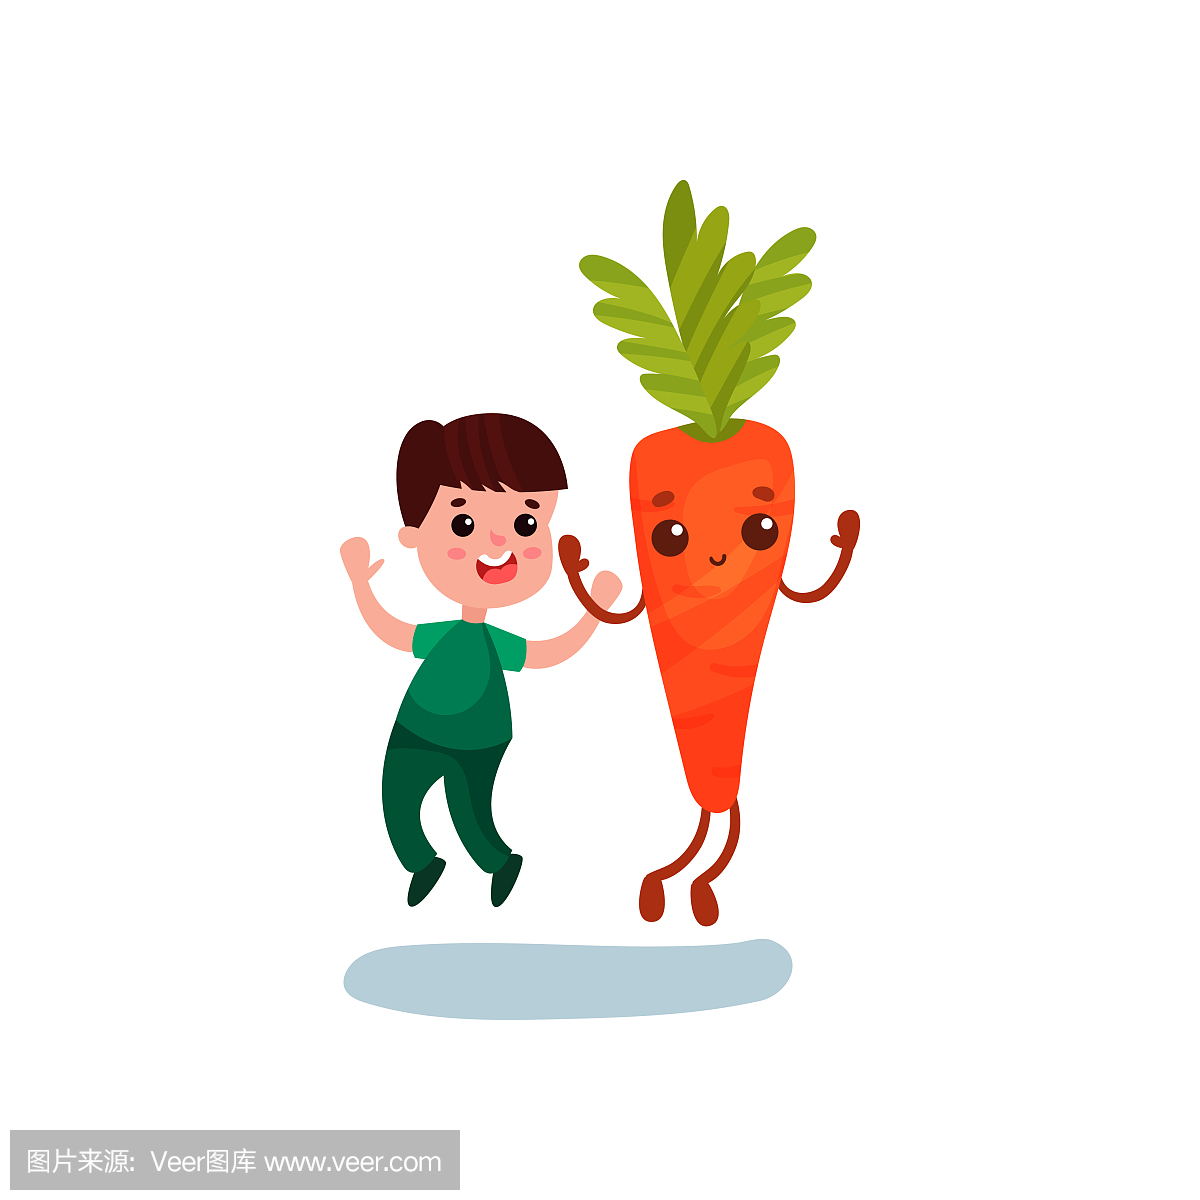 可爱的小男孩与快乐的巨型胡萝卜蔬菜角色,最